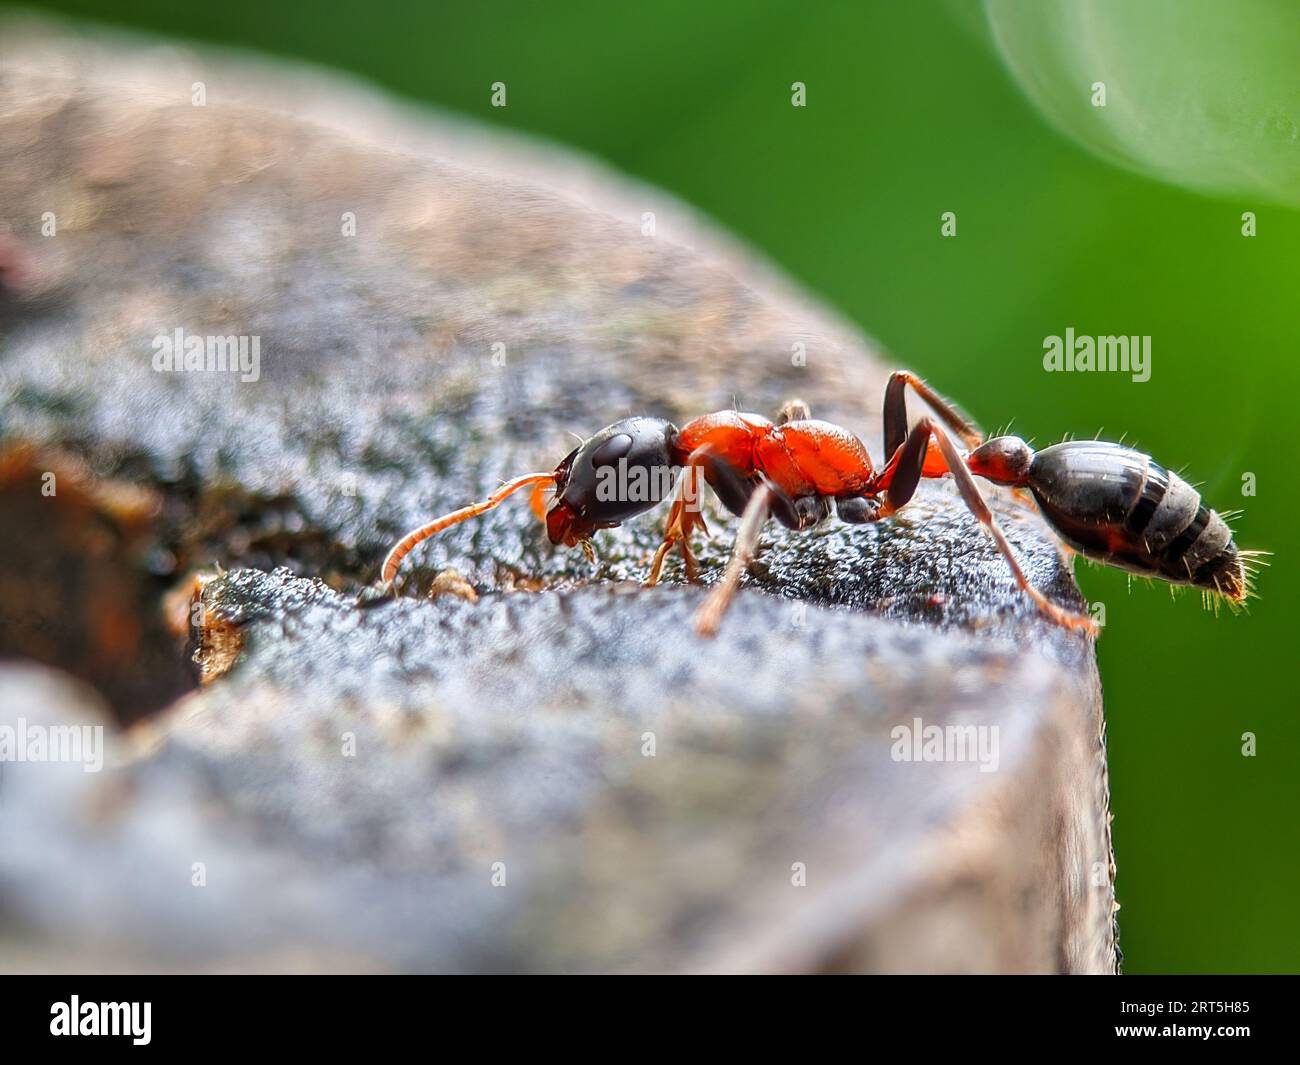 Primo piano di una formica gigante australiana di Toro, Myrmecia gratiosa, con occhi e mascelle a fuoco che camminano sui ramoscelli e cercano il cibo Foto Stock